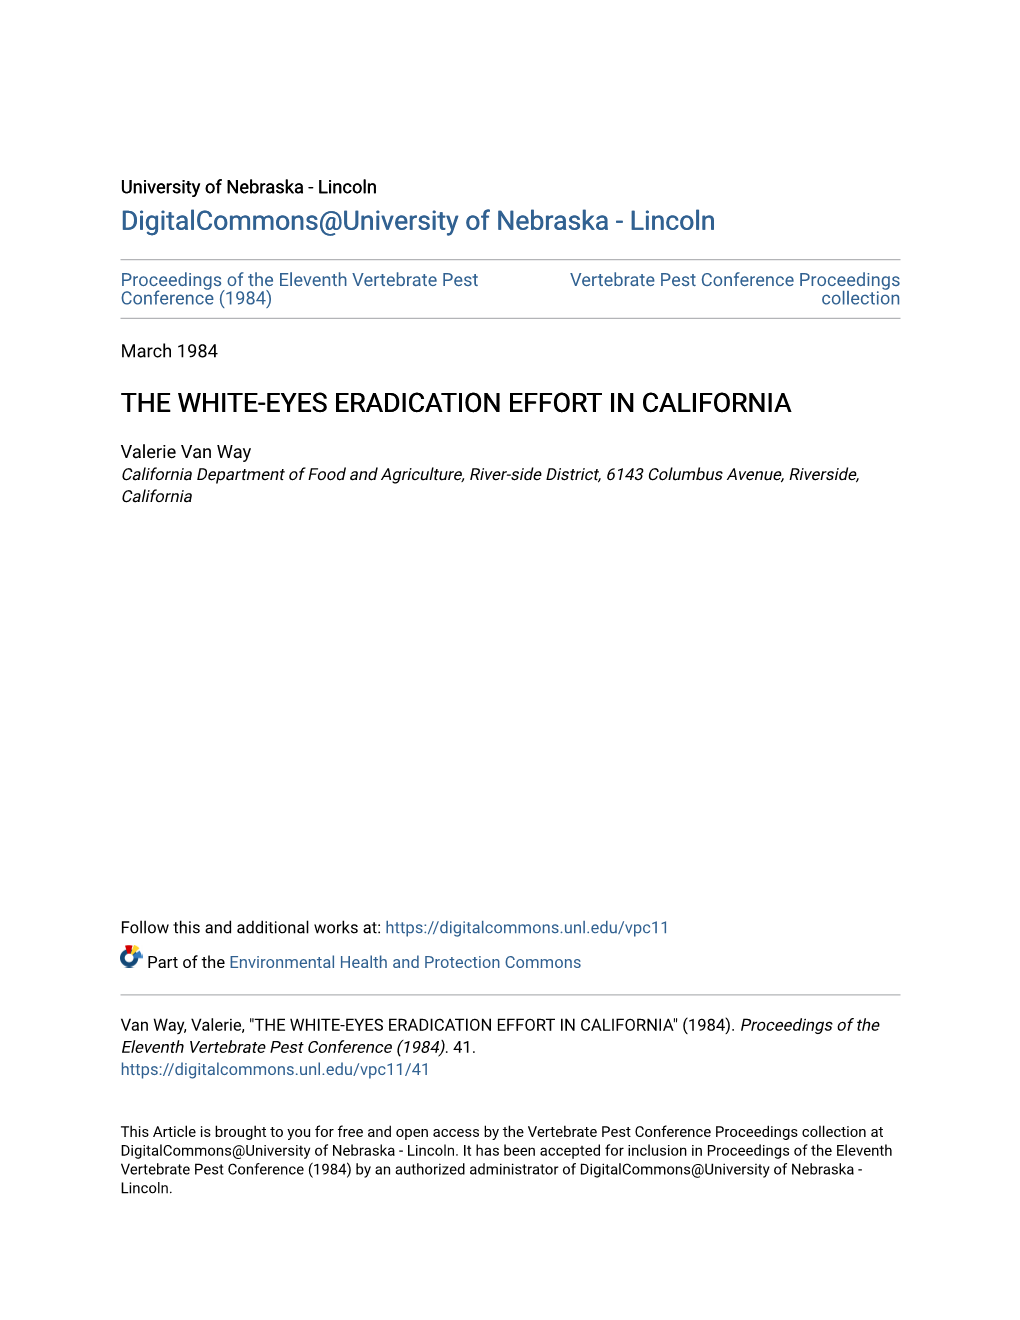 The White-Eyes Eradication Effort in California